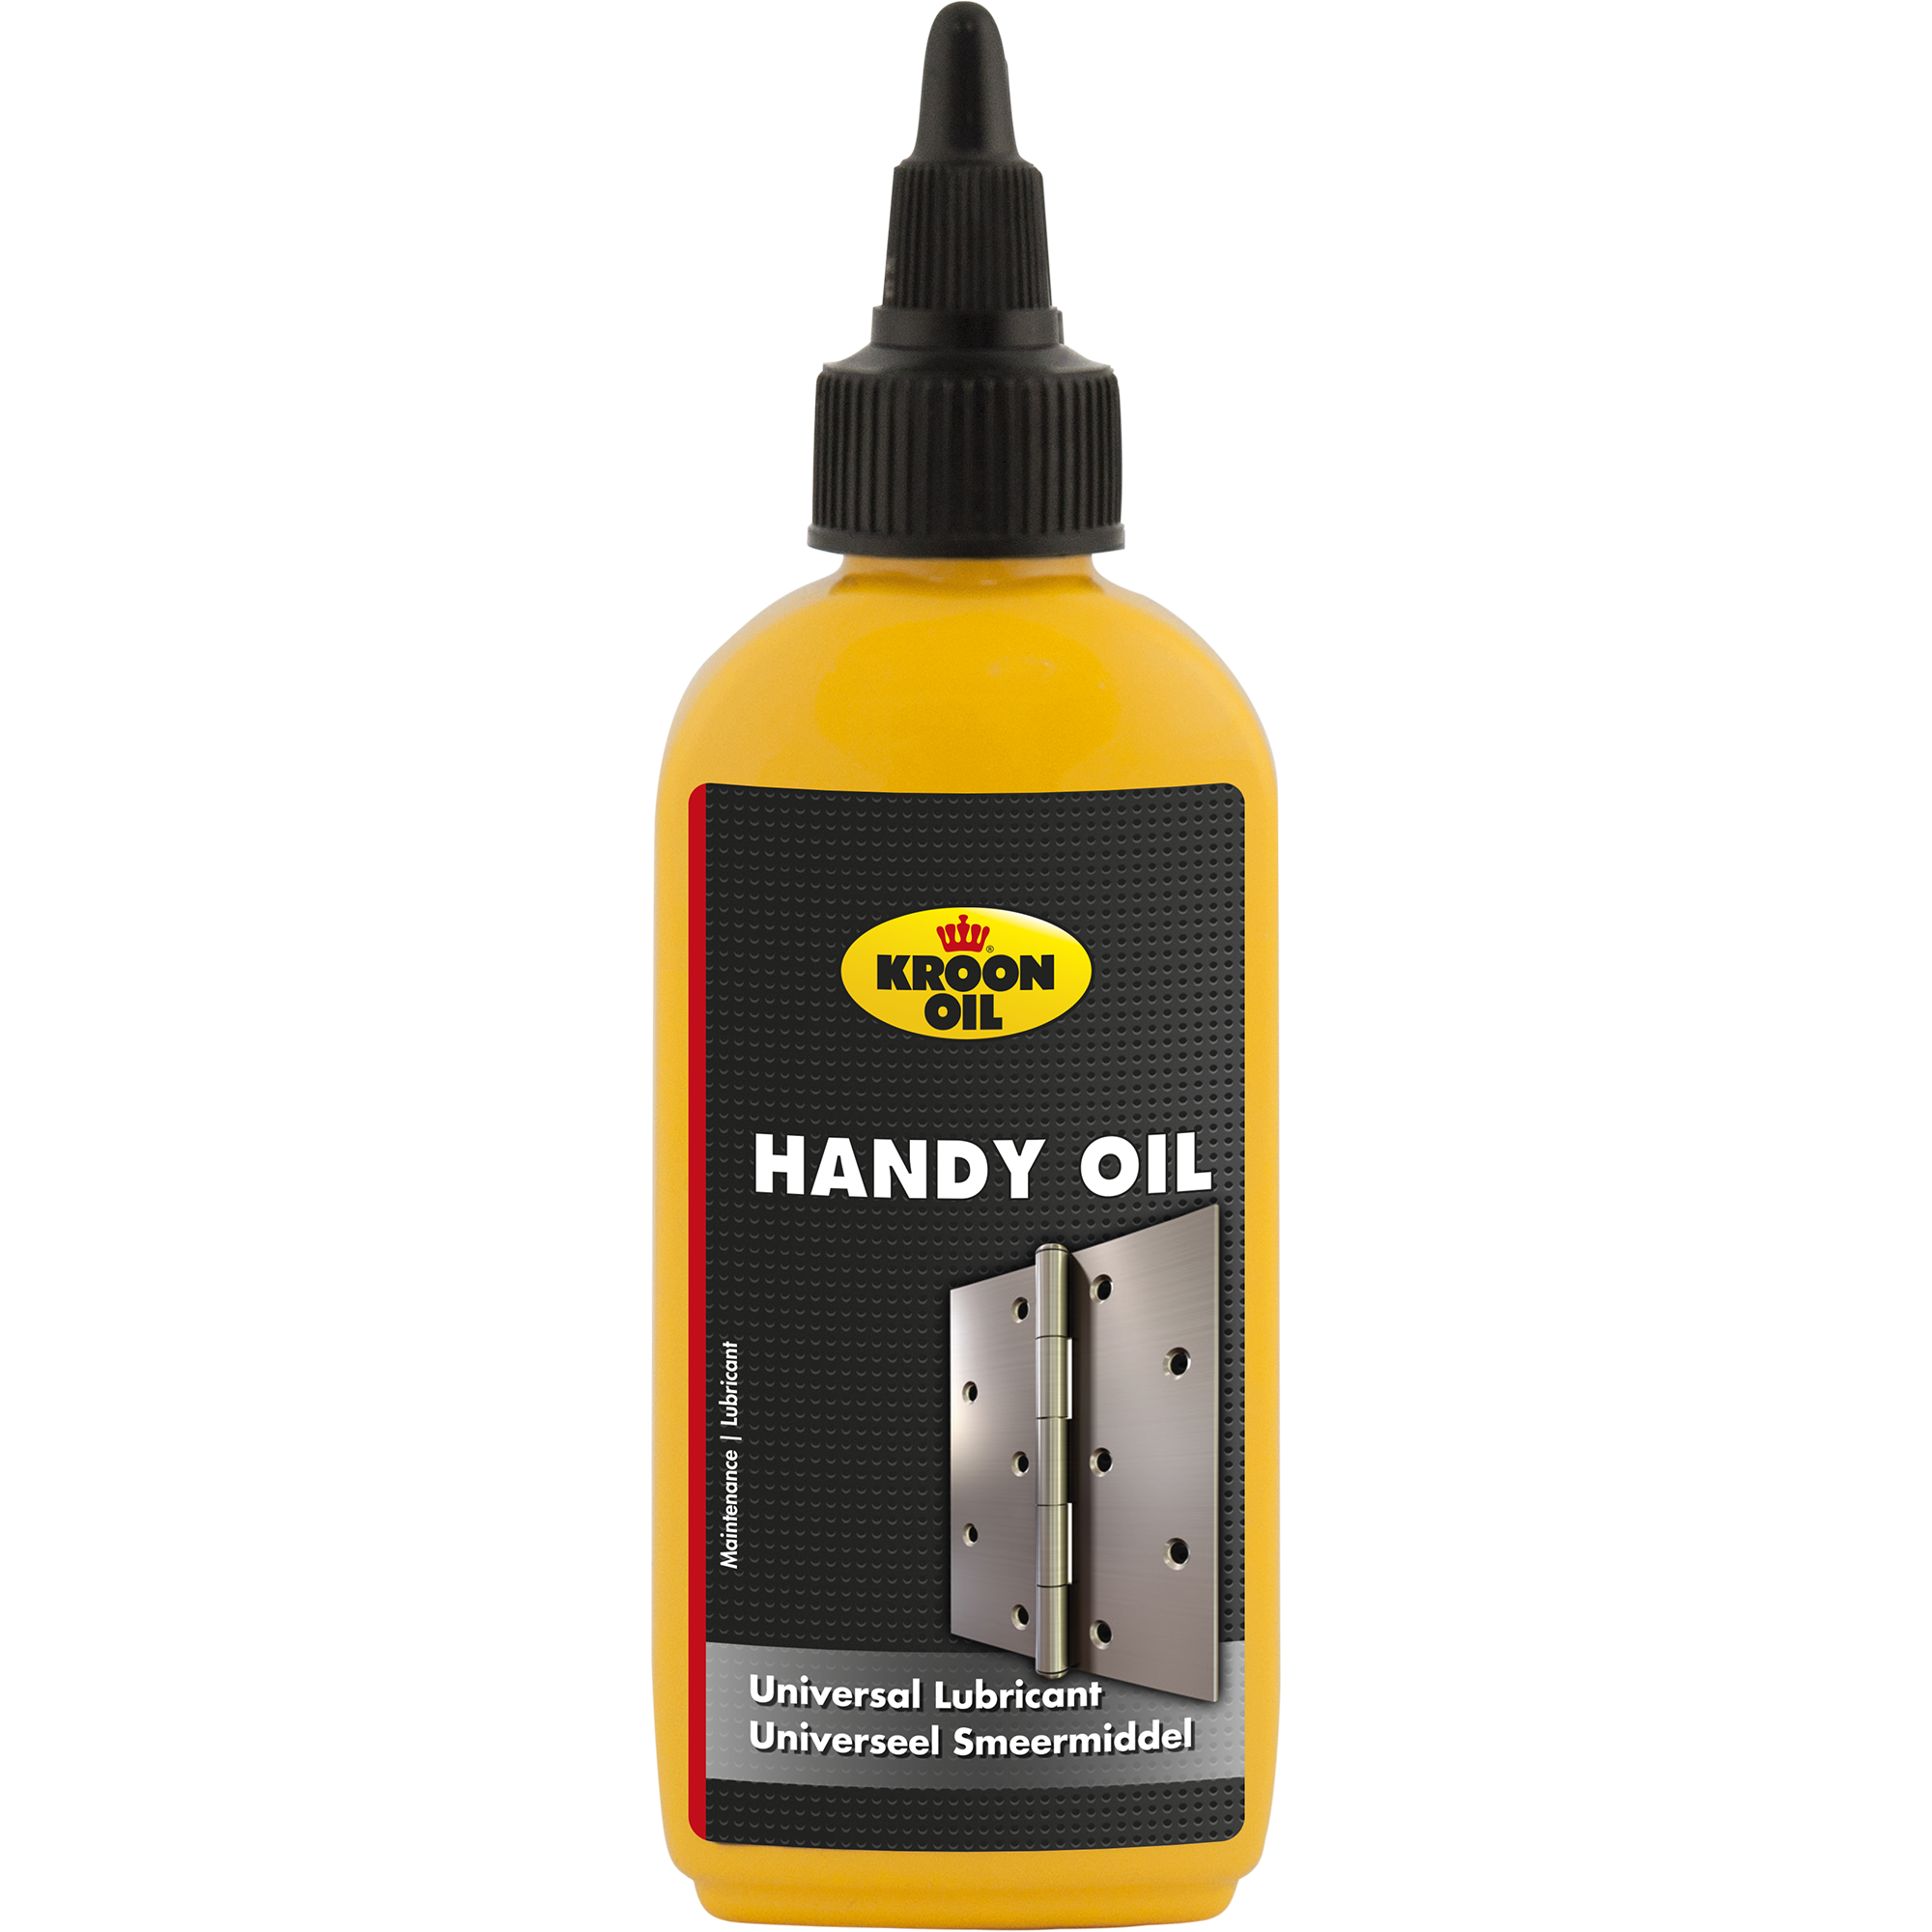 22012-100ML Handy Oil is een minerale huishoudolie die door een intensieve raffinagebehandeling zuurvrij is.